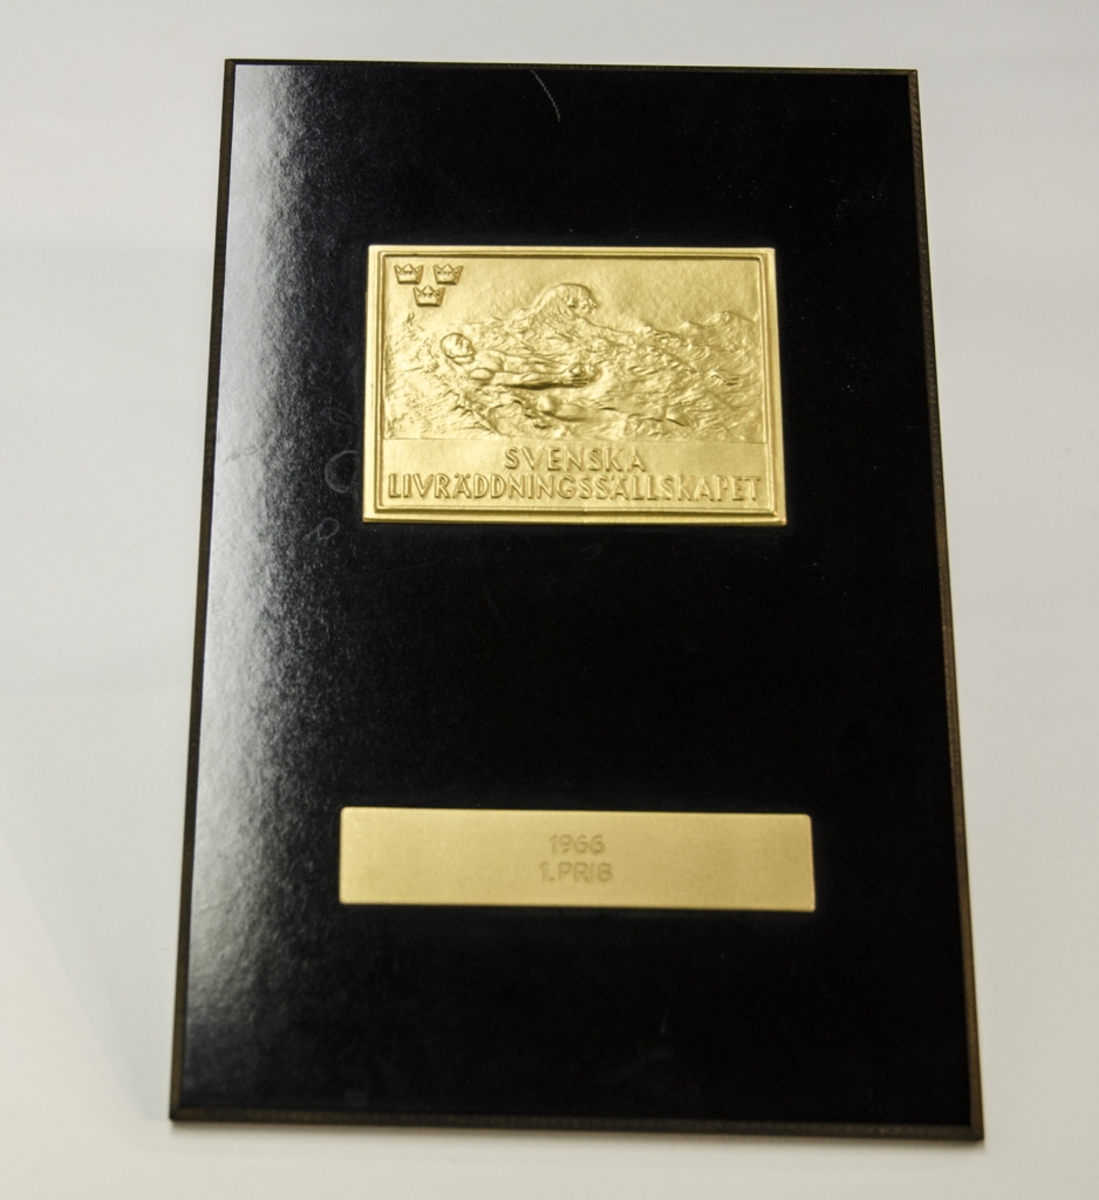 Guldfärgad metallplakett föreställande simmande man i lågrelief, i översta vänstra hörnet tre kronor samt texten: "SVENSKA LIVRÄDDNINGSSÄLLSKAPET", fästad på svart träplatta. Graverad med följande text: "1966 1. PRIS".